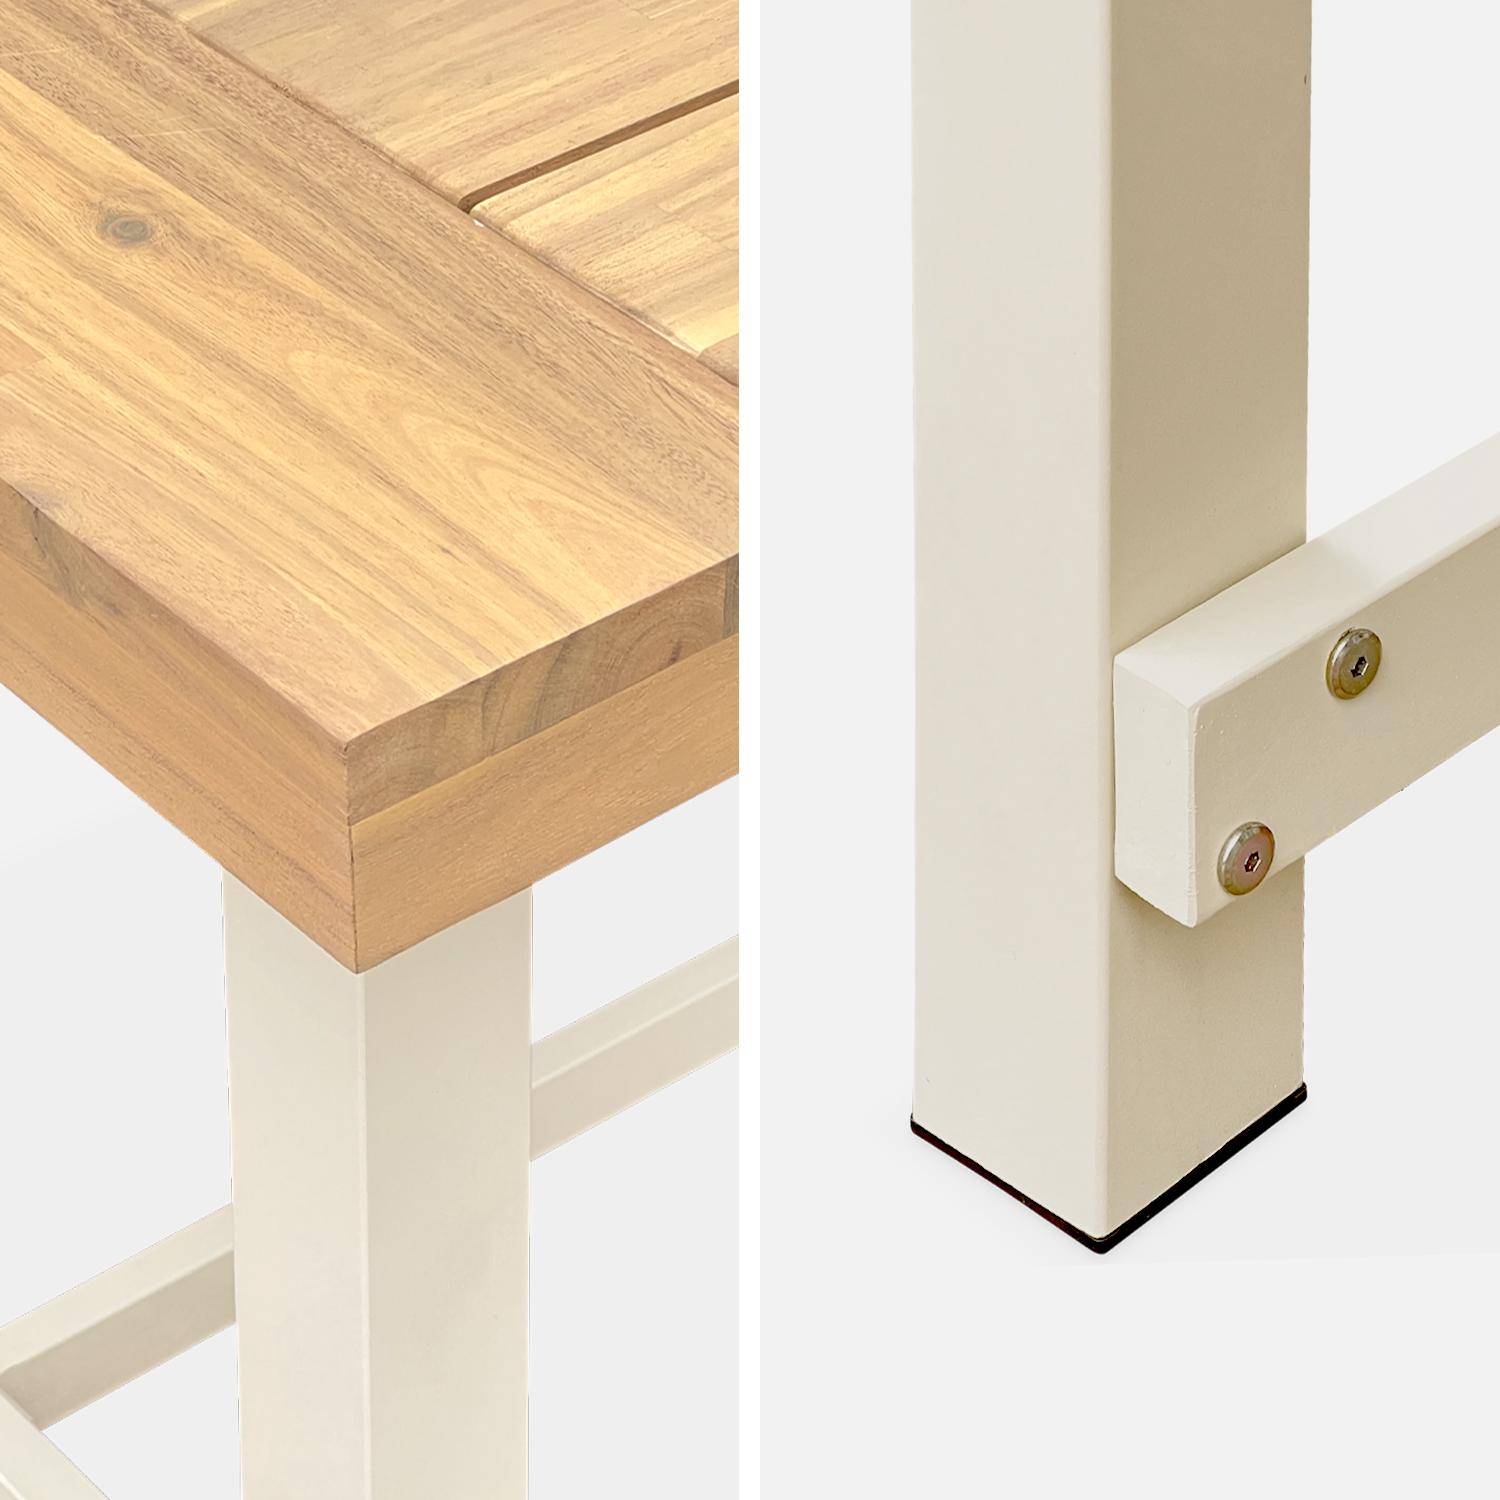 Table intérieur/extérieur en bois clair, effet teck et acier galvanisé ivoire, Fortaleza L190 x P91.5 x H76cm 6-8 places,sweeek,Photo5